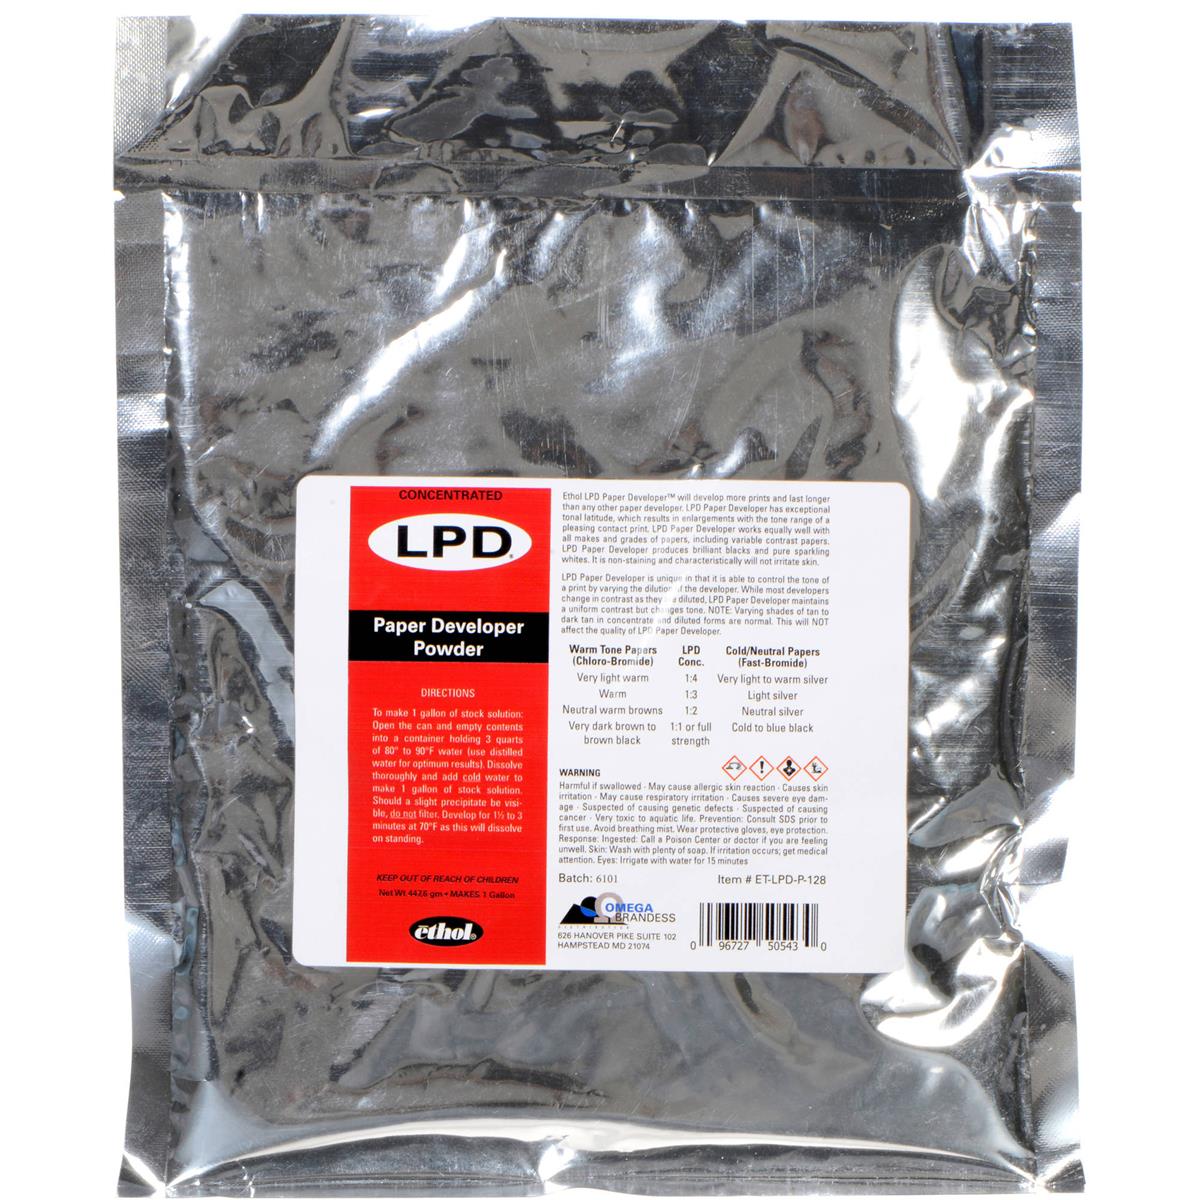 

Ethol LPD 1 Gallon Powder Black / White Paper Developer